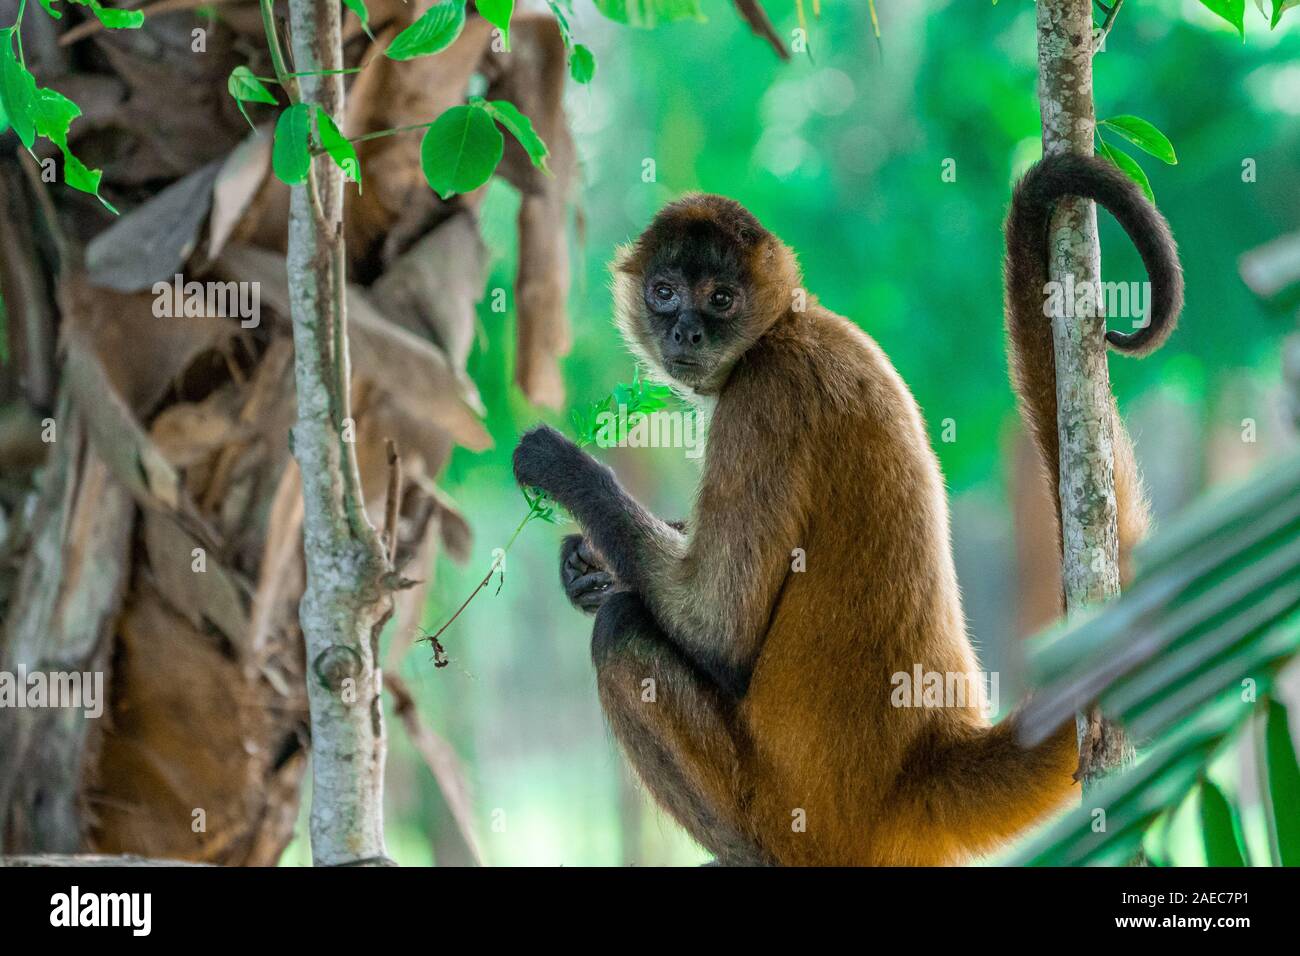 Portrait d'un singe-araignée de Geoffroy (Ateles geoffroyi), également connu sous le nom de singe araignée aux mains noires, est une espèce de singe-araignée, un typ Banque D'Images